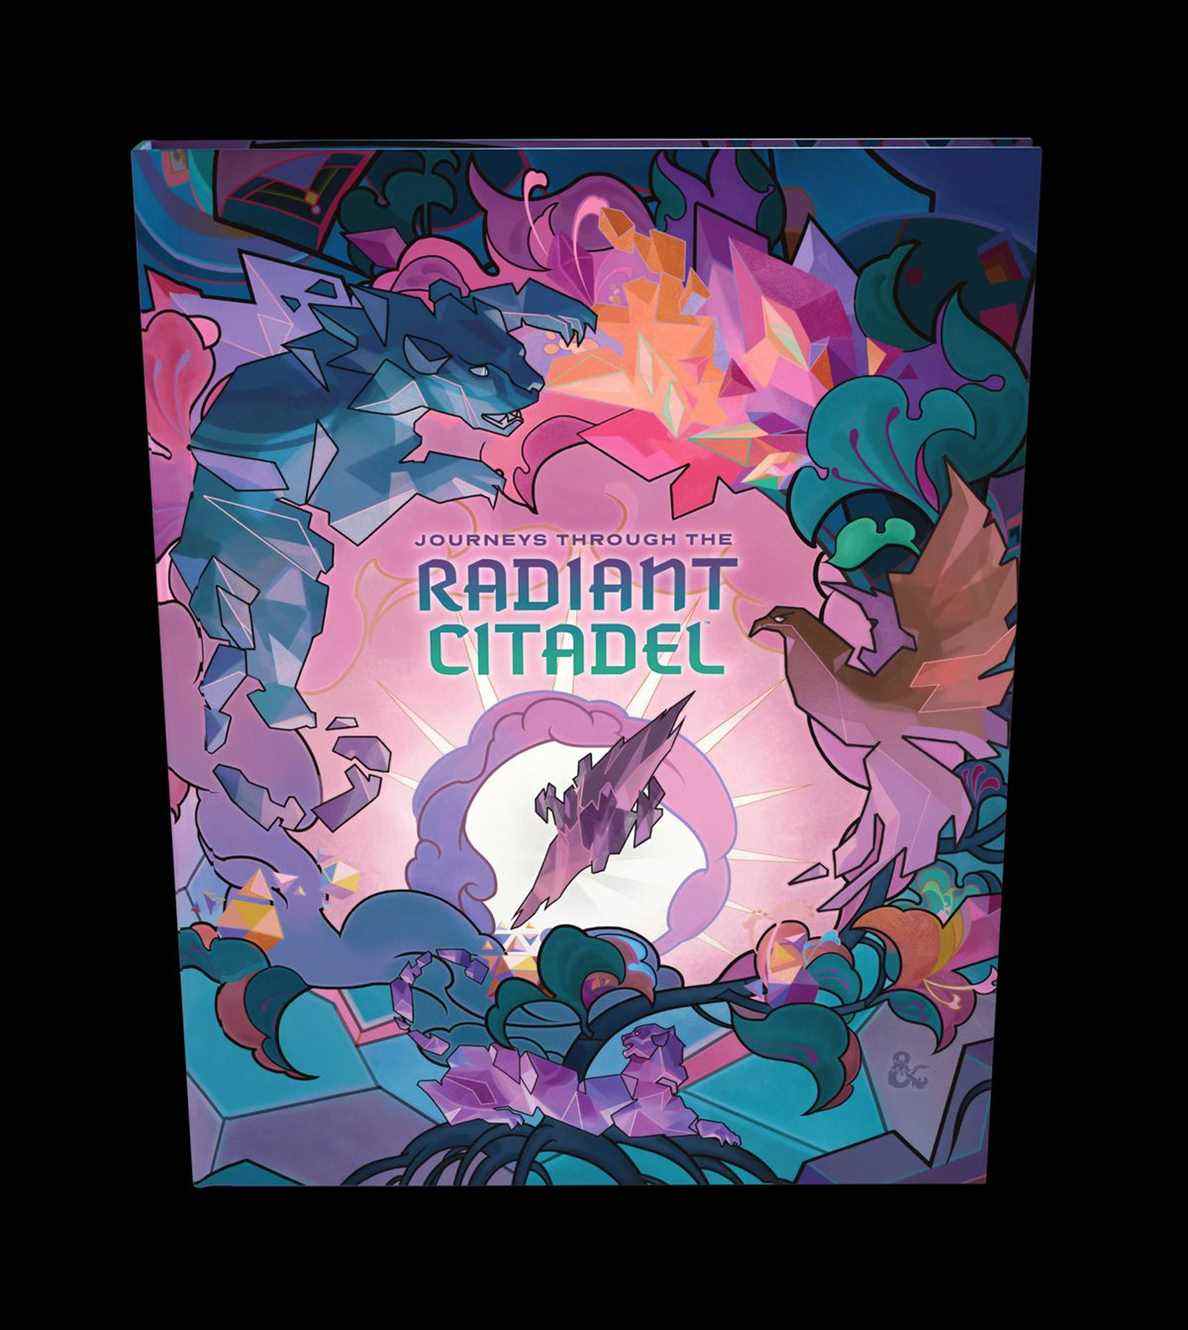 Une couverture alternative pour Radiant Citadel, lourde sur les pastels et les formes géométriques.